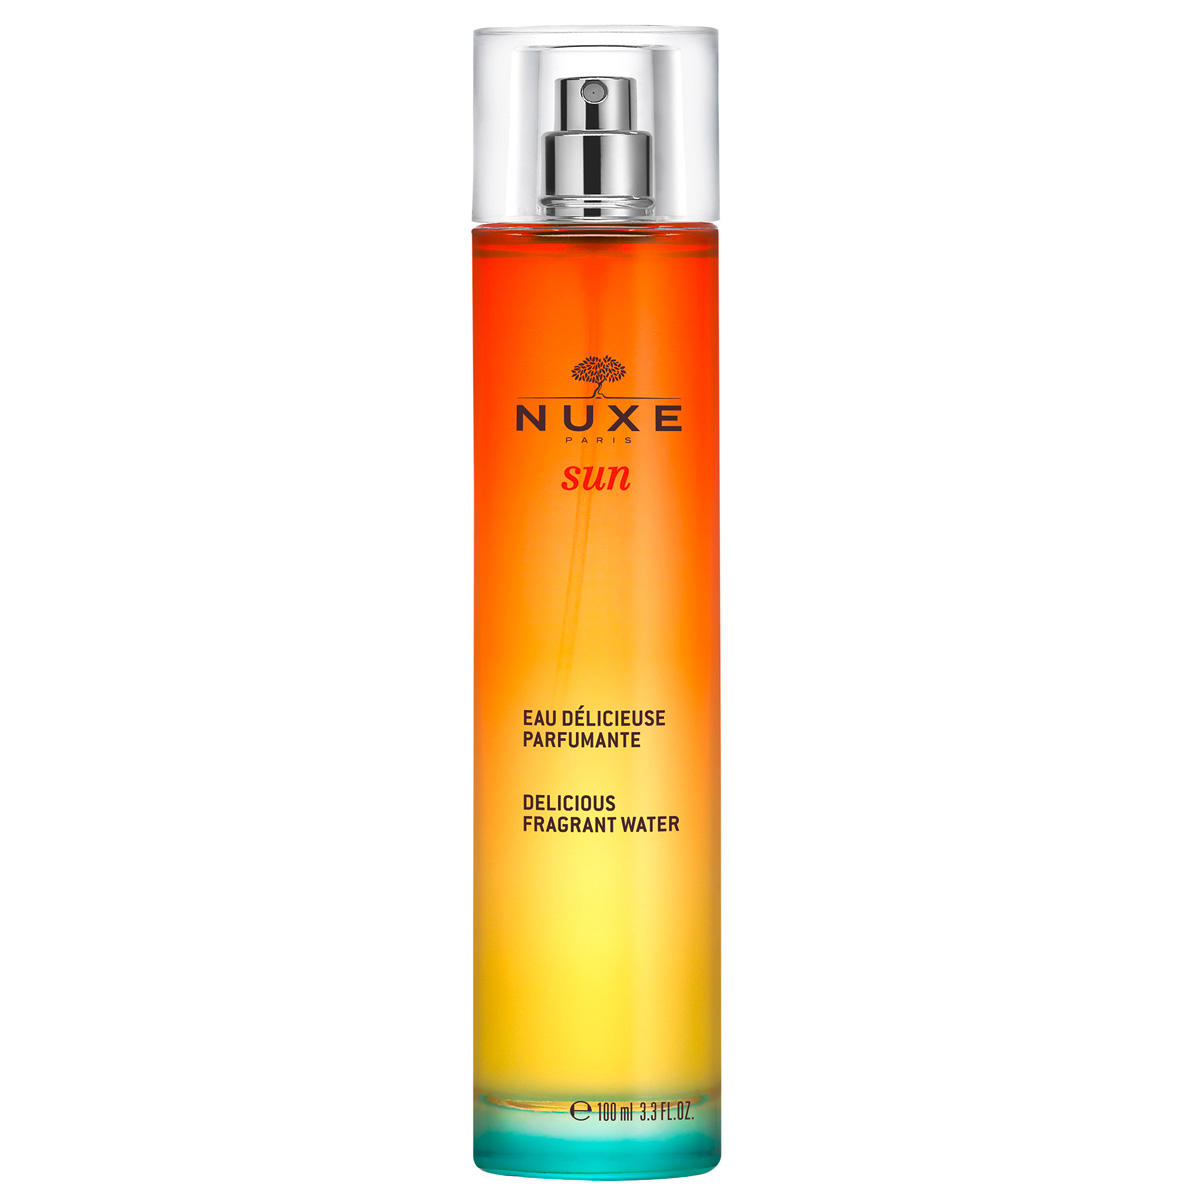 NUXE Sun Eau délicieuse parfumante 100 ml - 1